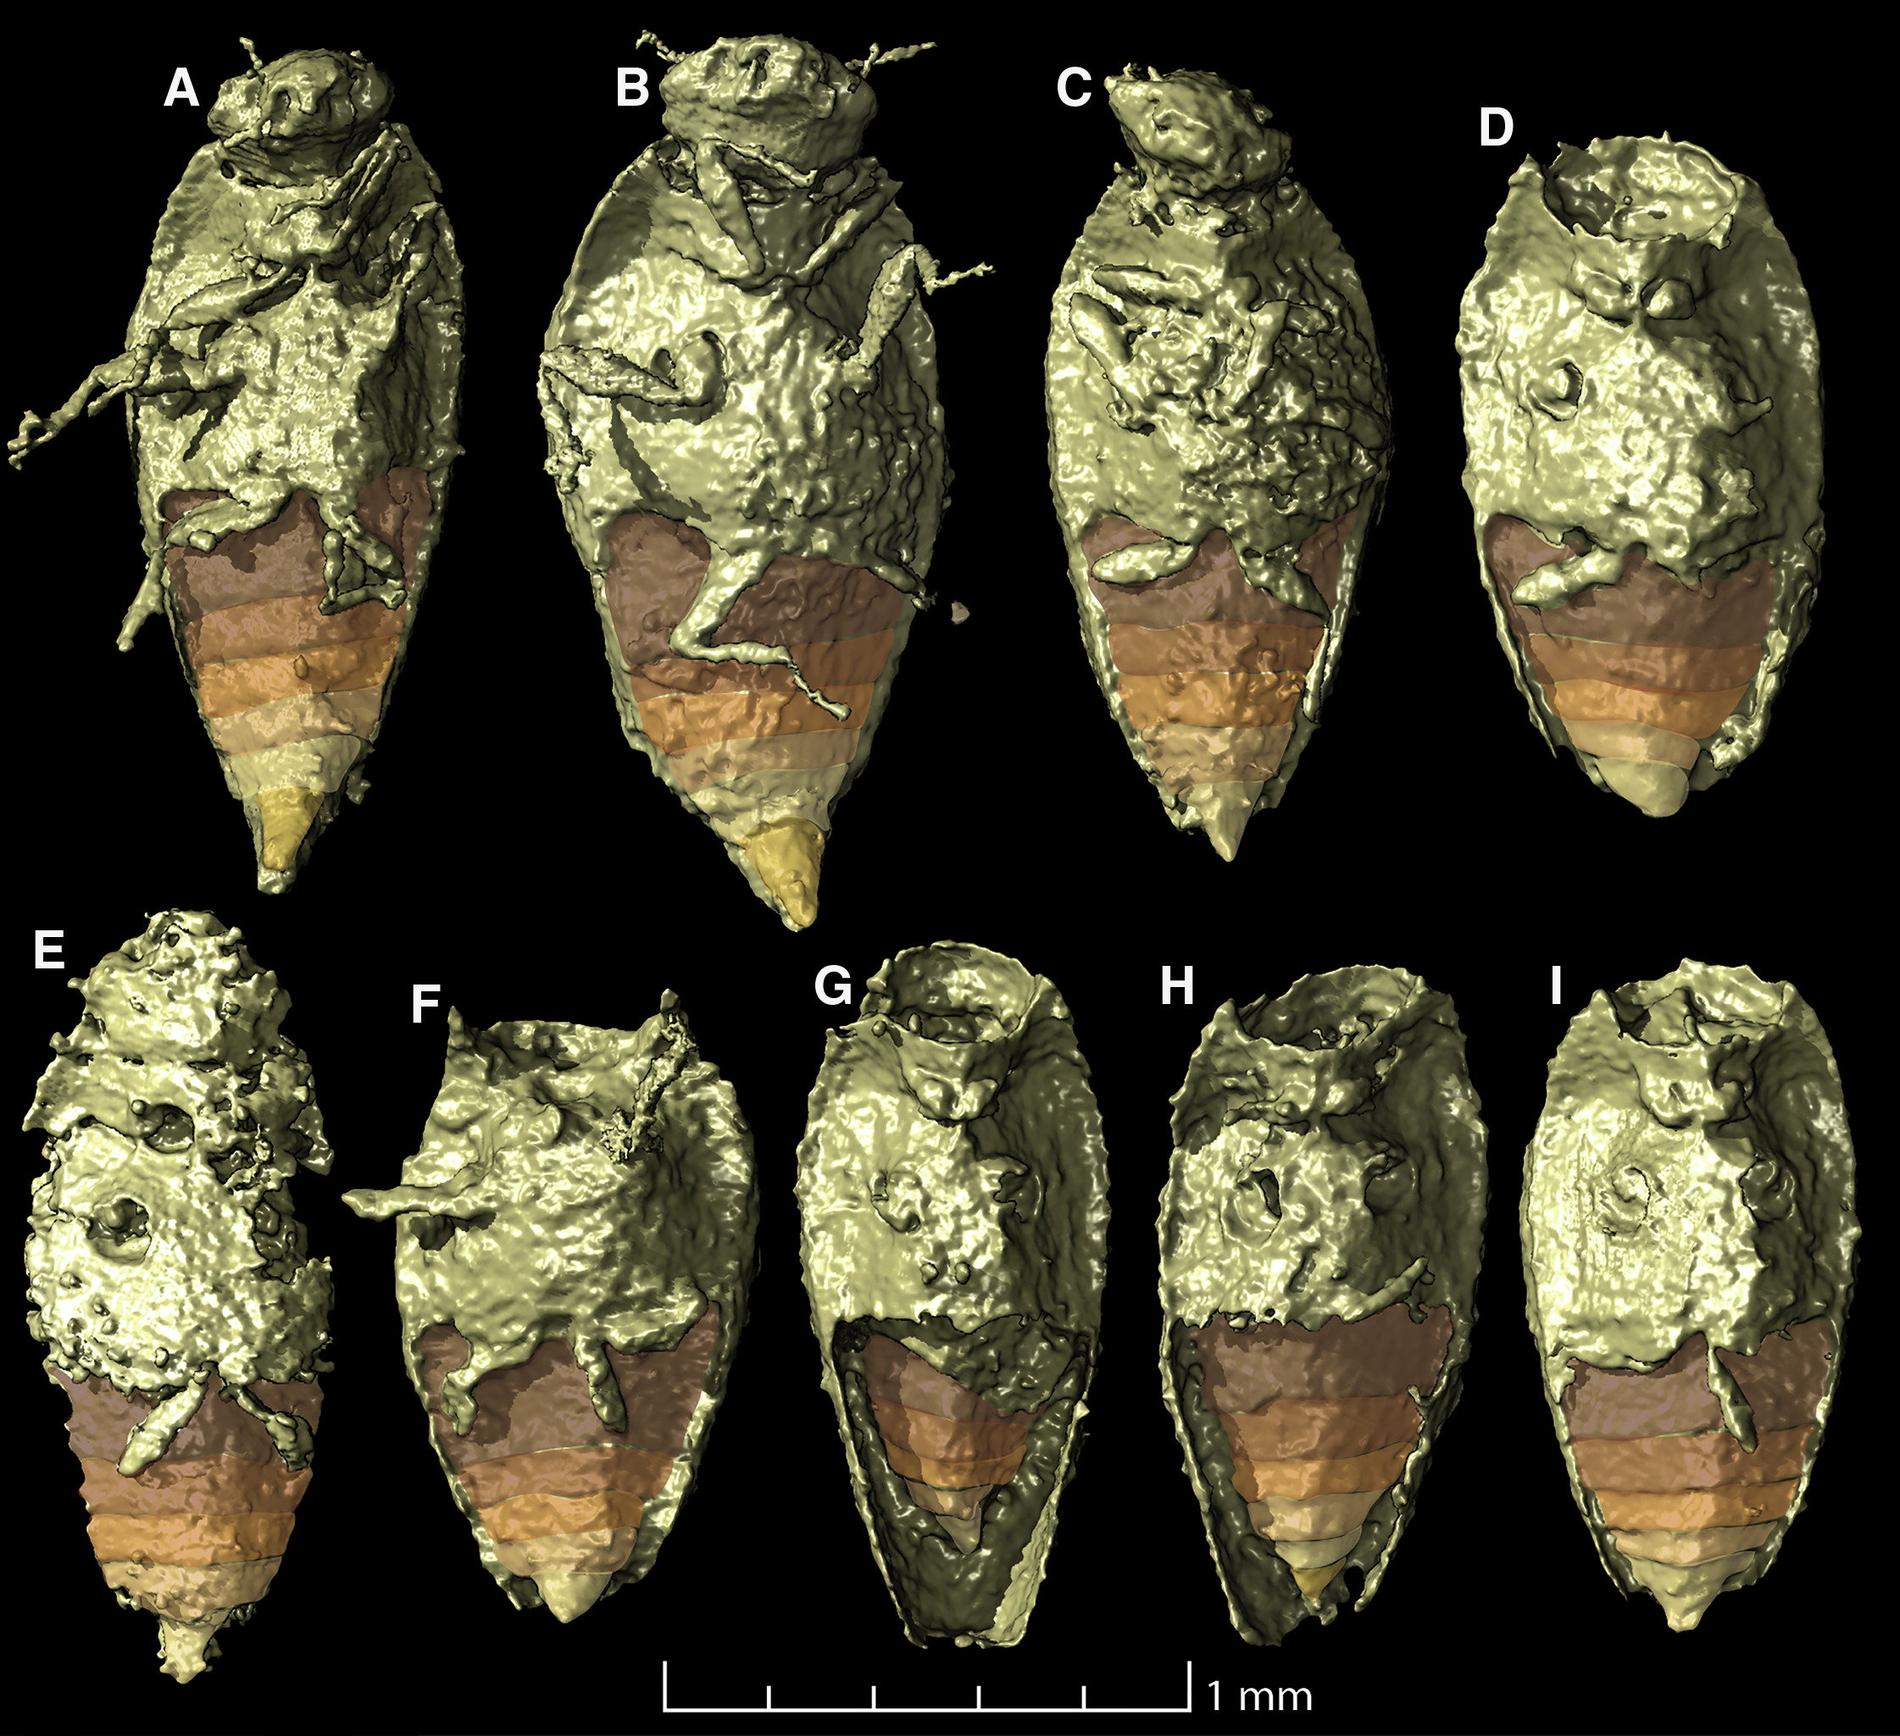 Åtta välbevarade skalbaggar som fanns inuti koproliten som studerades, här i 3D-rendering. Med mikrotomografi har fossilen röntgats så att materialet inuti kunnat särskiljas.